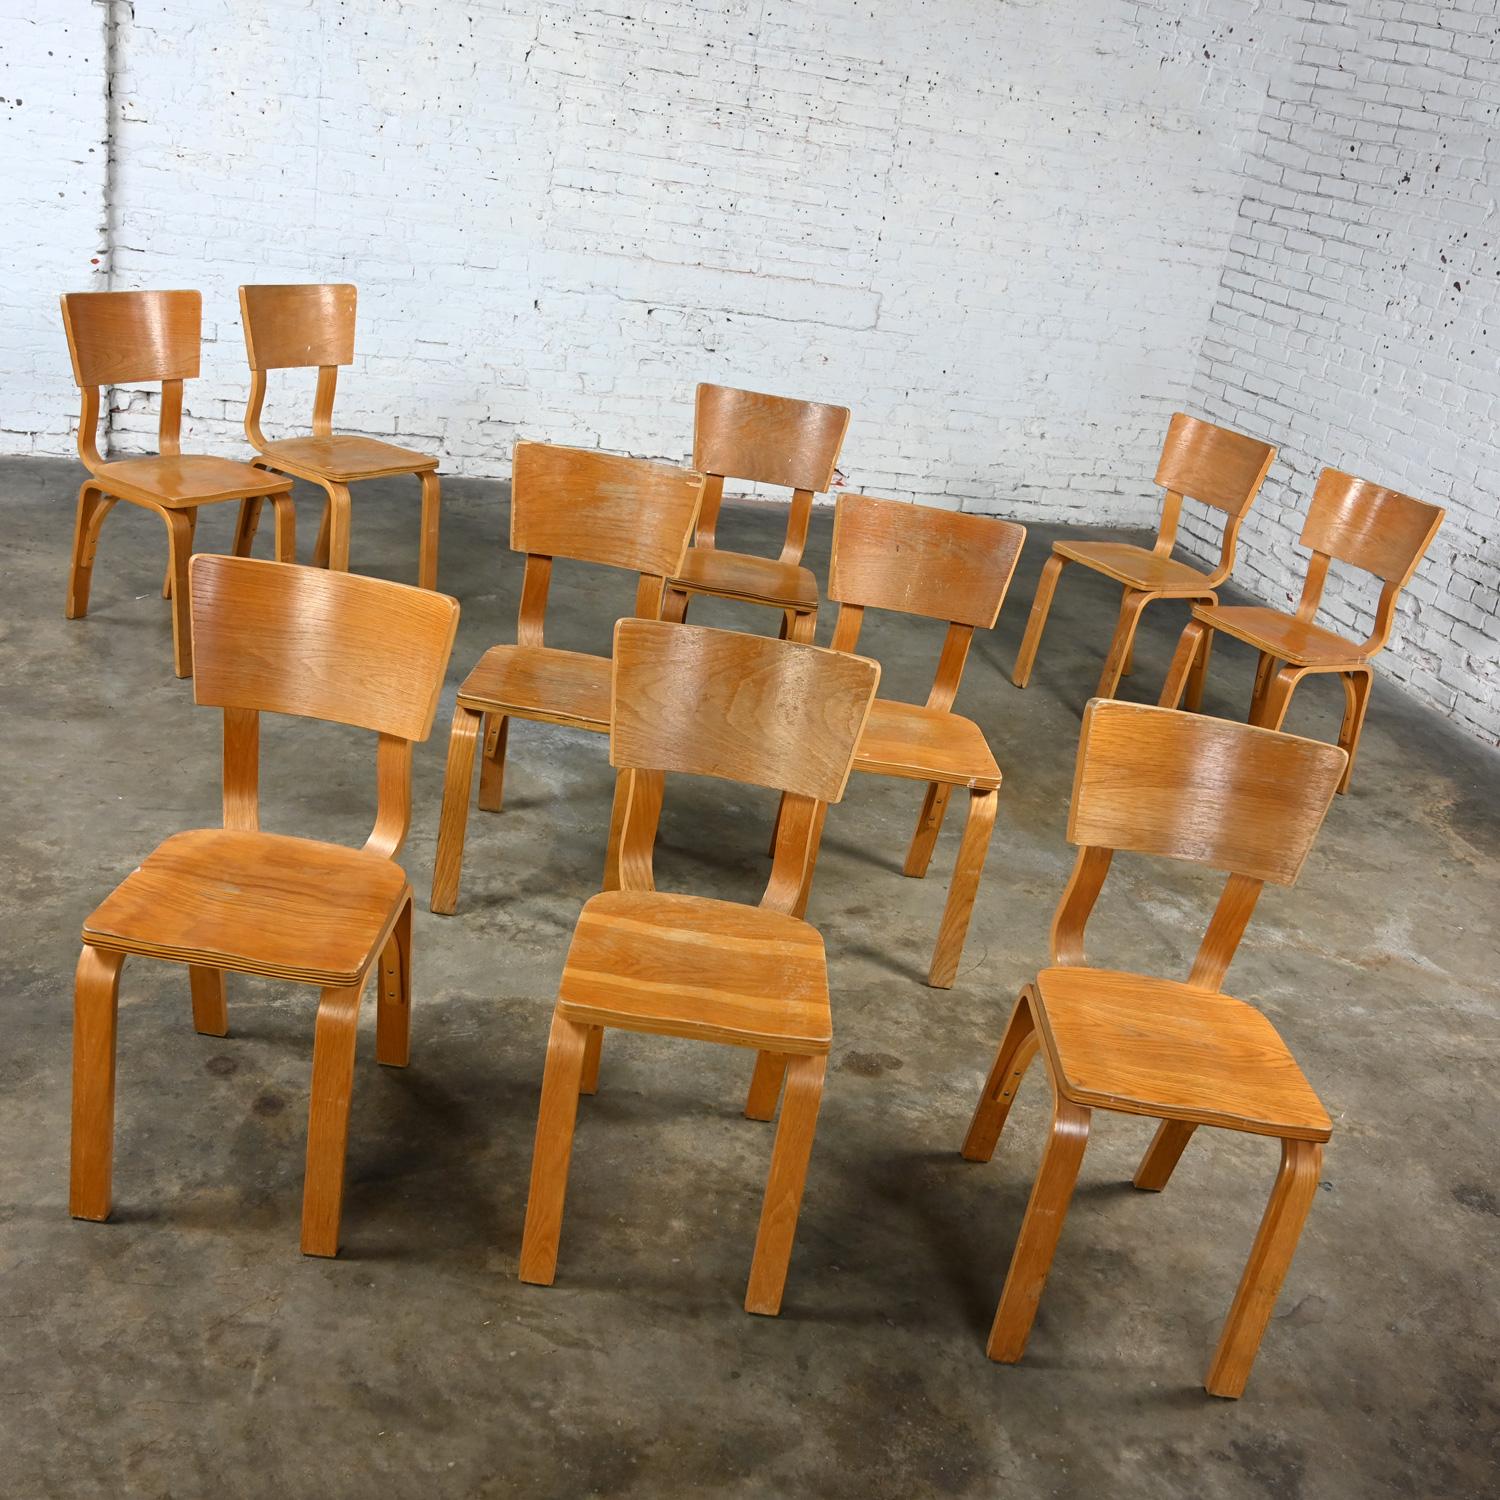 Mid-Century Modern Lot de 10 chaises de salle à manger MCM Thonet #1216 en contreplaqué de chêne courbé, assise en selle, arc simple en vente